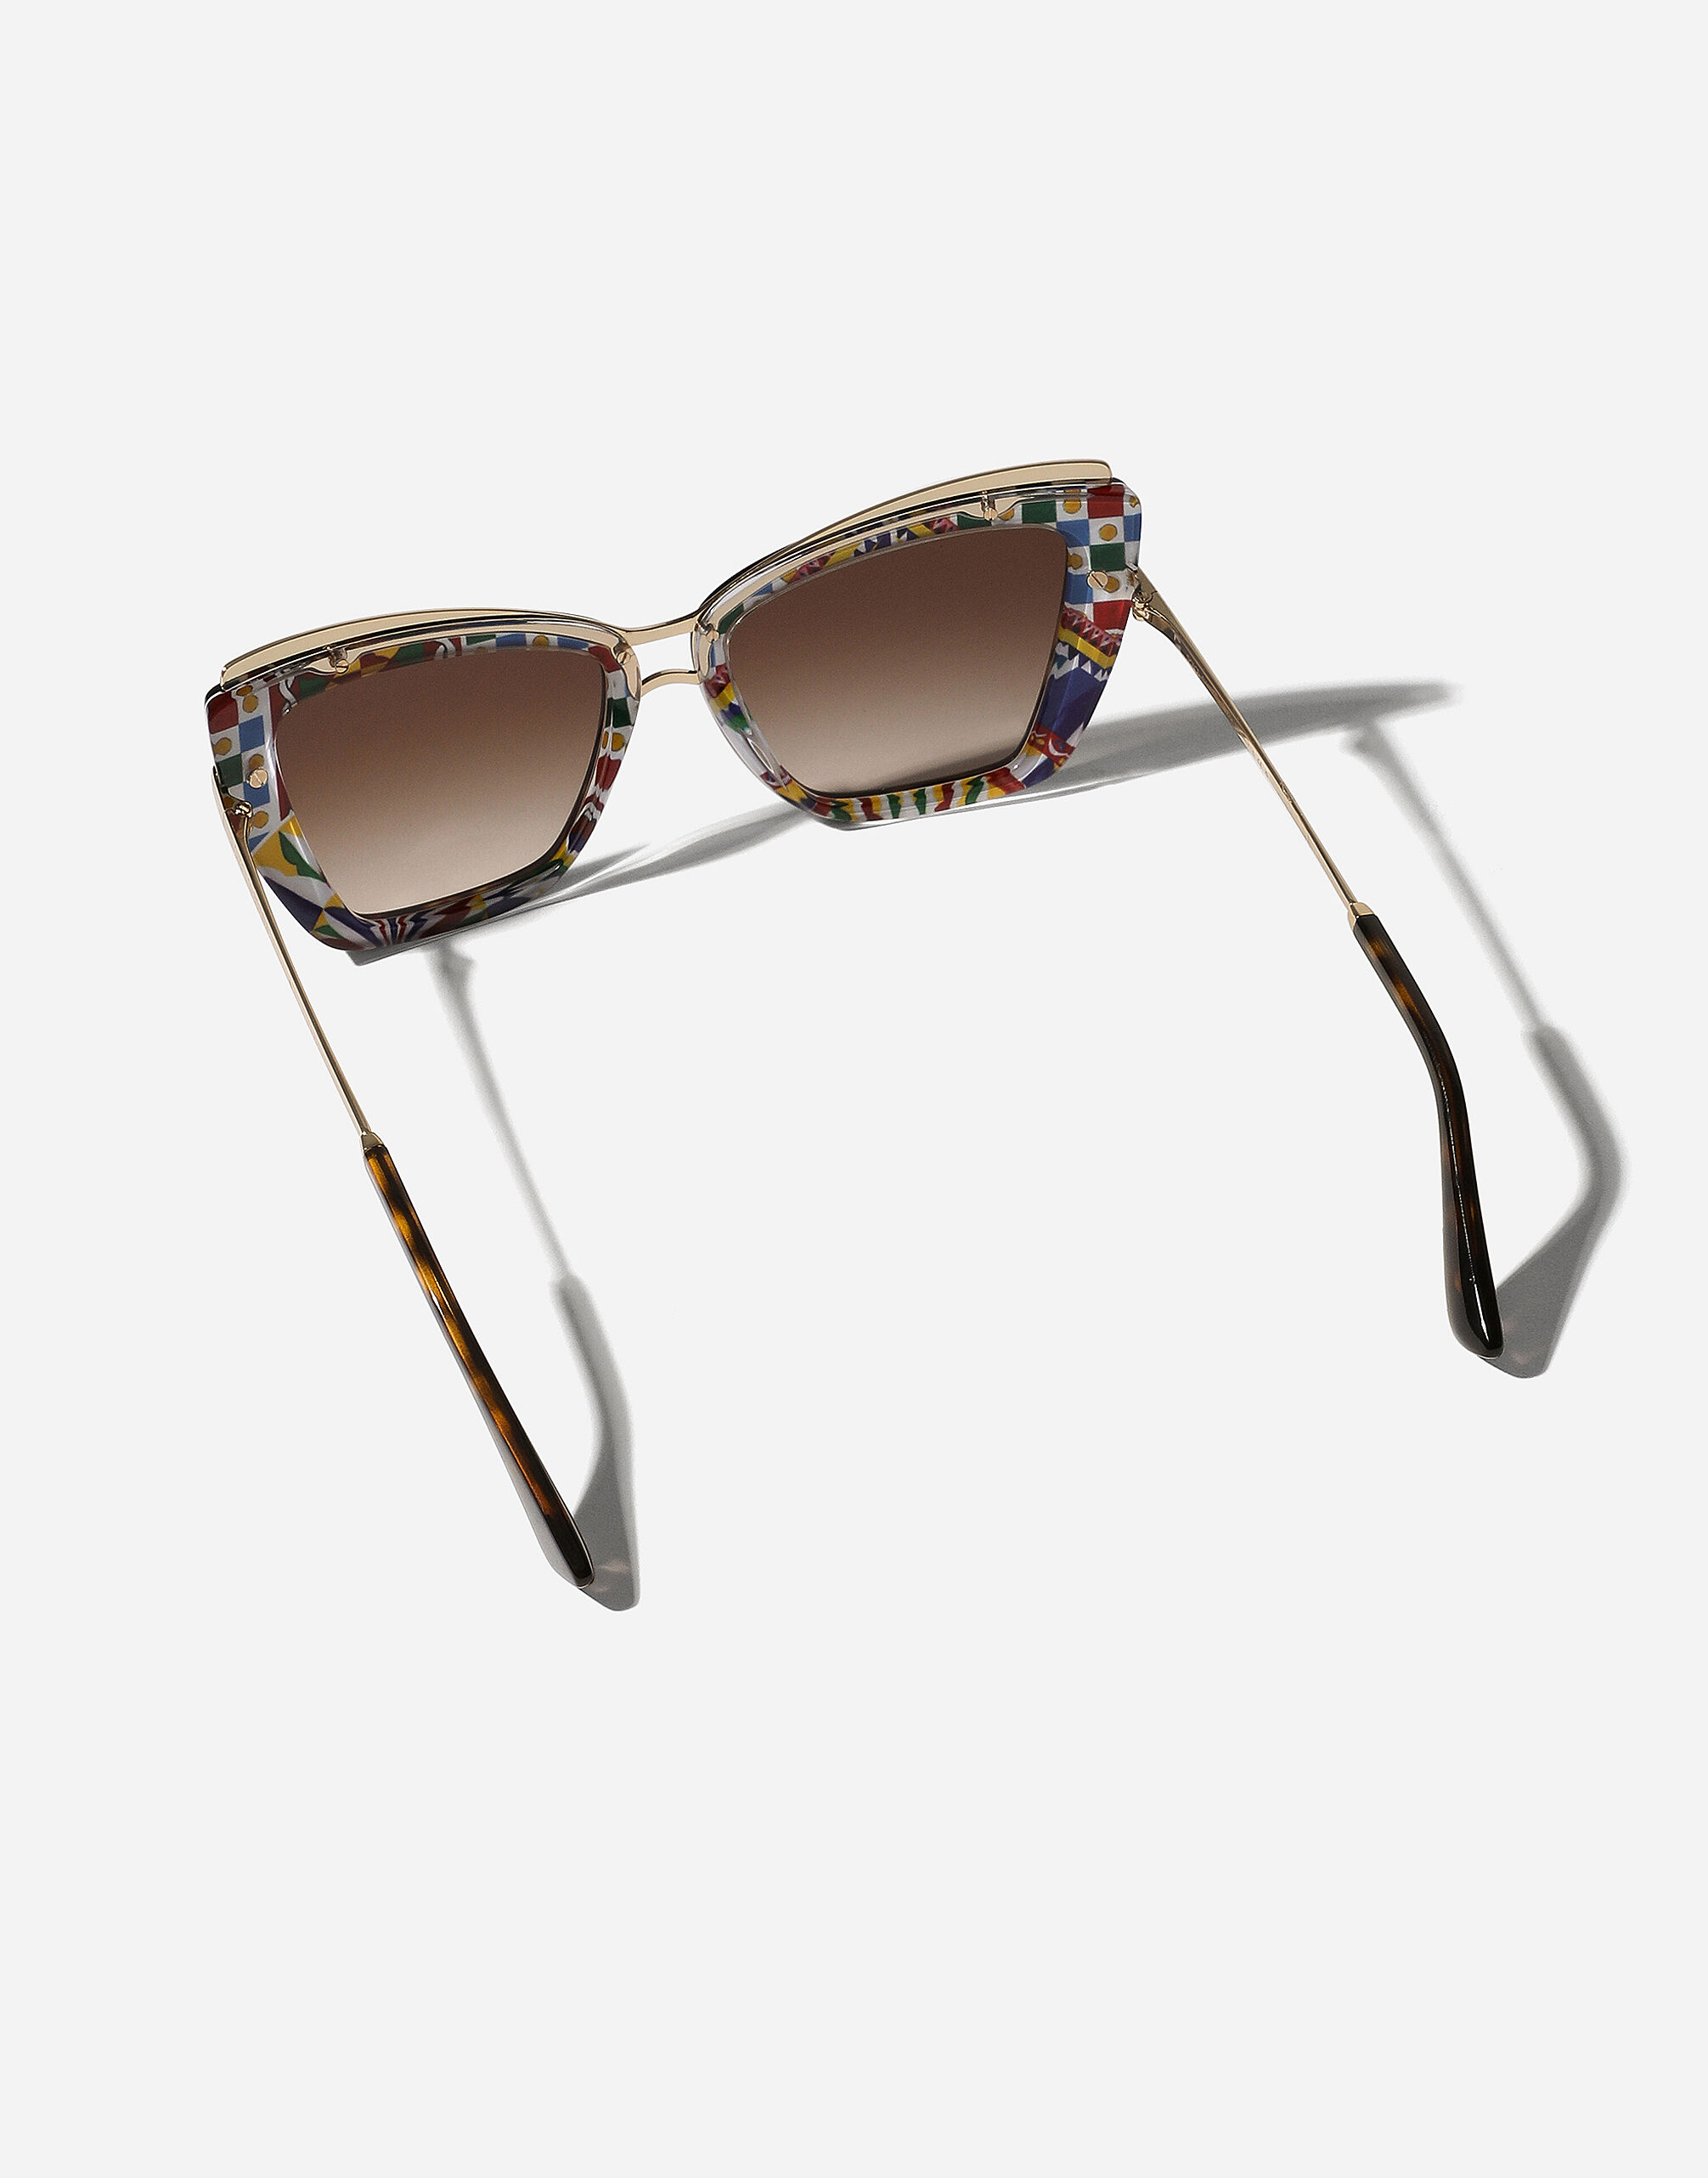 Metal print sunglasses